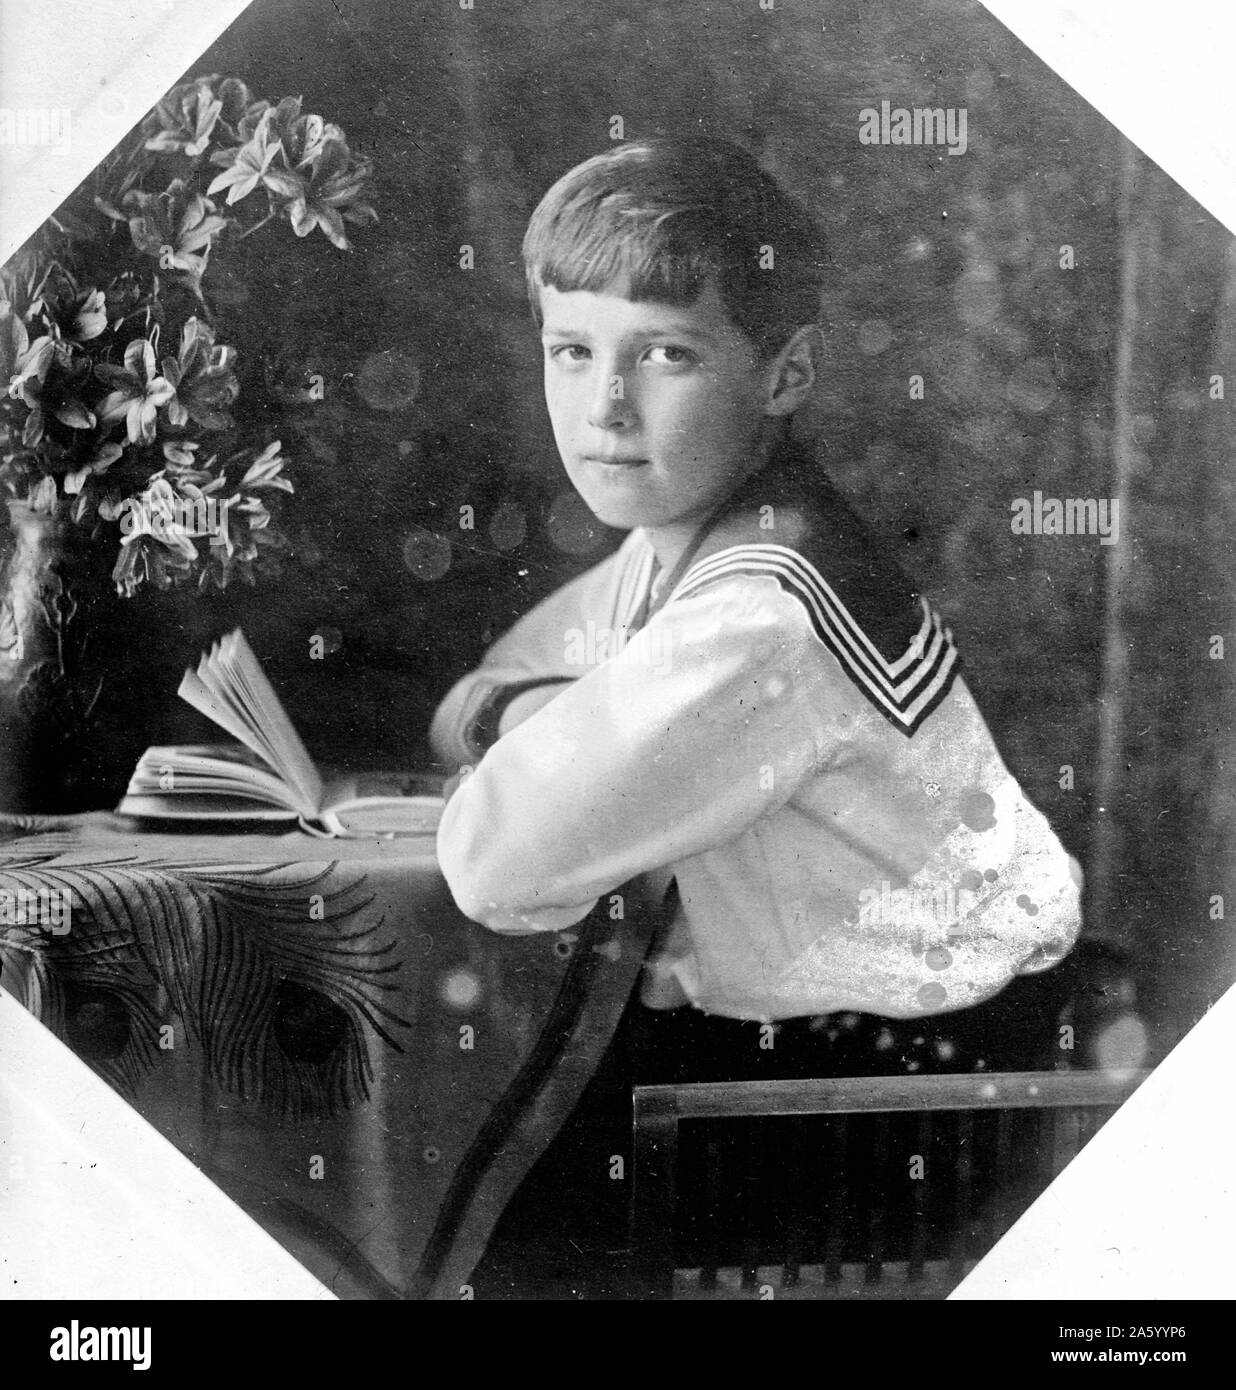 Fotografia di Tsarevich Alexei Romanov (1904-1918) apparente erede al trono dell'impero russo. Egli era il bambino più in giovane età e soltanto figlio di imperatore Nicola II e l'imperatrice Alexandra Feodorovna. Datata 1910 Foto Stock